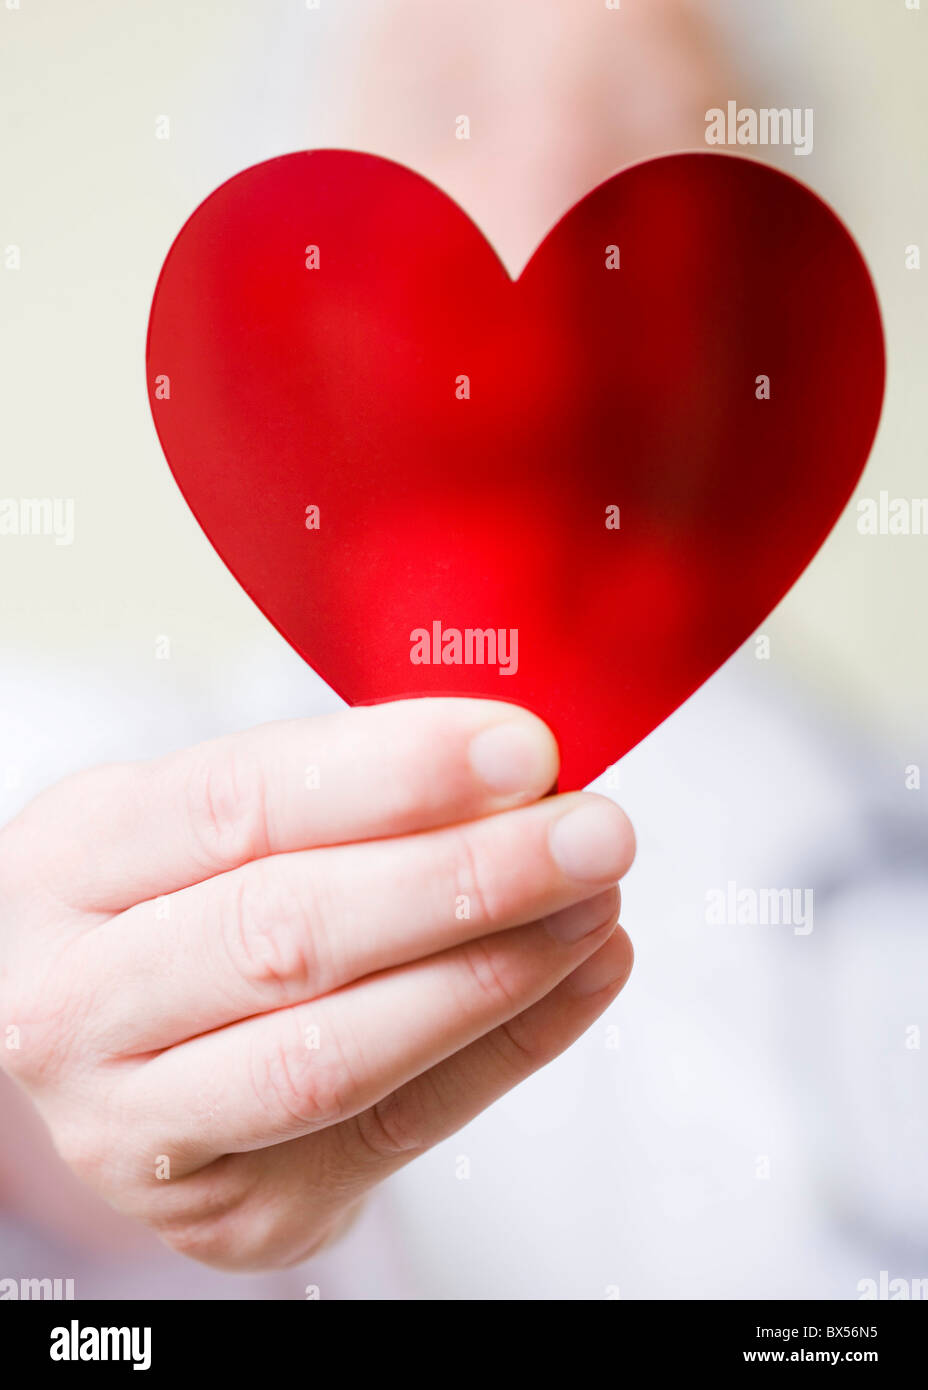 Heart health Stock Photo